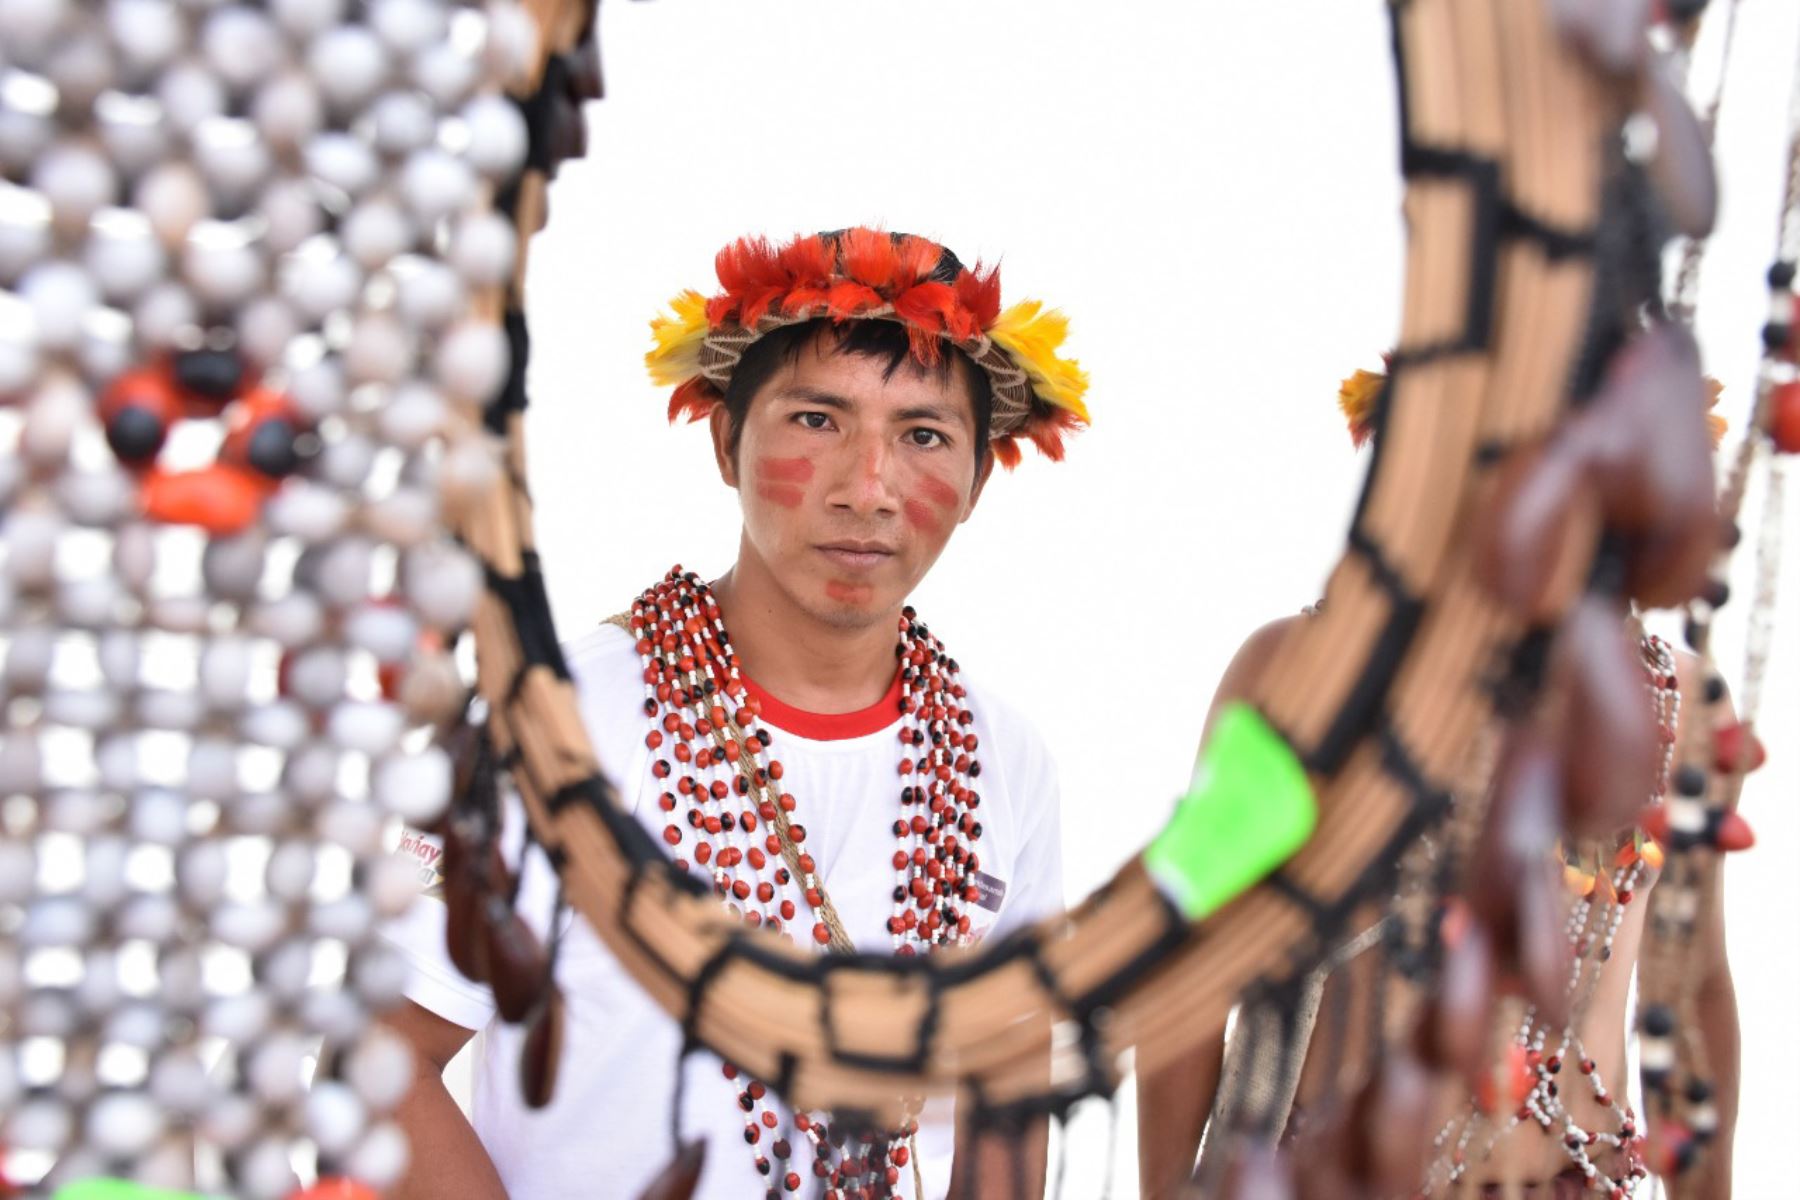 Cincuenta pequeños emprendimientos de los pueblos awajún y wampi expusieron sus productos en la VI Feria Regional de Emprendimientos del proyecto Haku Wiñay/Noa Jayatai en Chachapoyas (Amazonas).